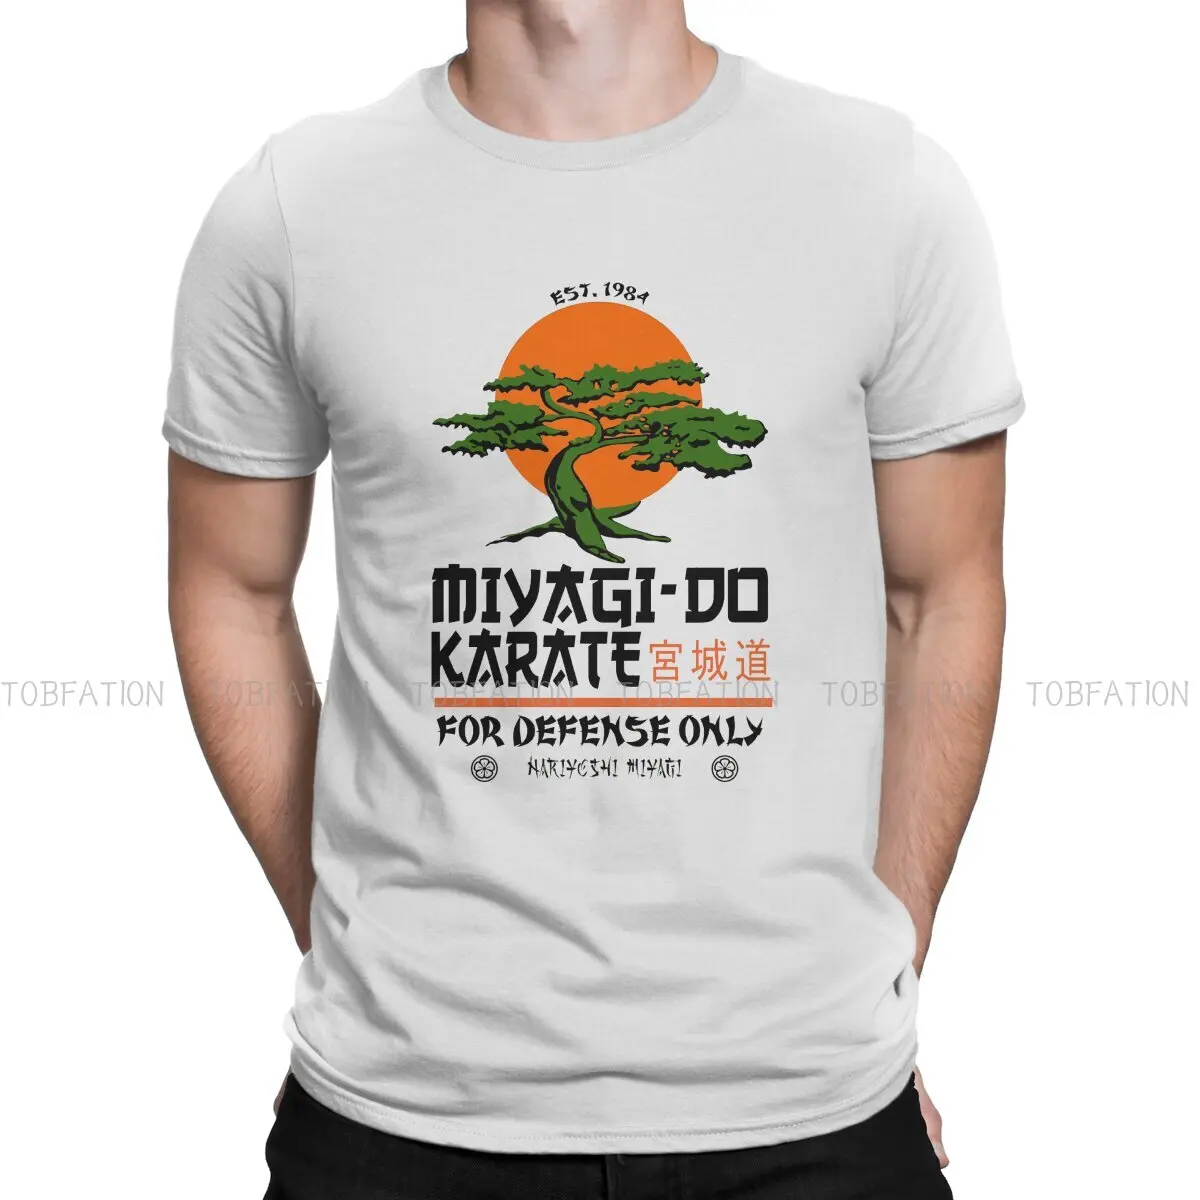 Miyagi Do Karate Hip Hop TShirt Cobra Kai Casual Size S-6XL T Shirt Hot Sale T-shirt For Men Women